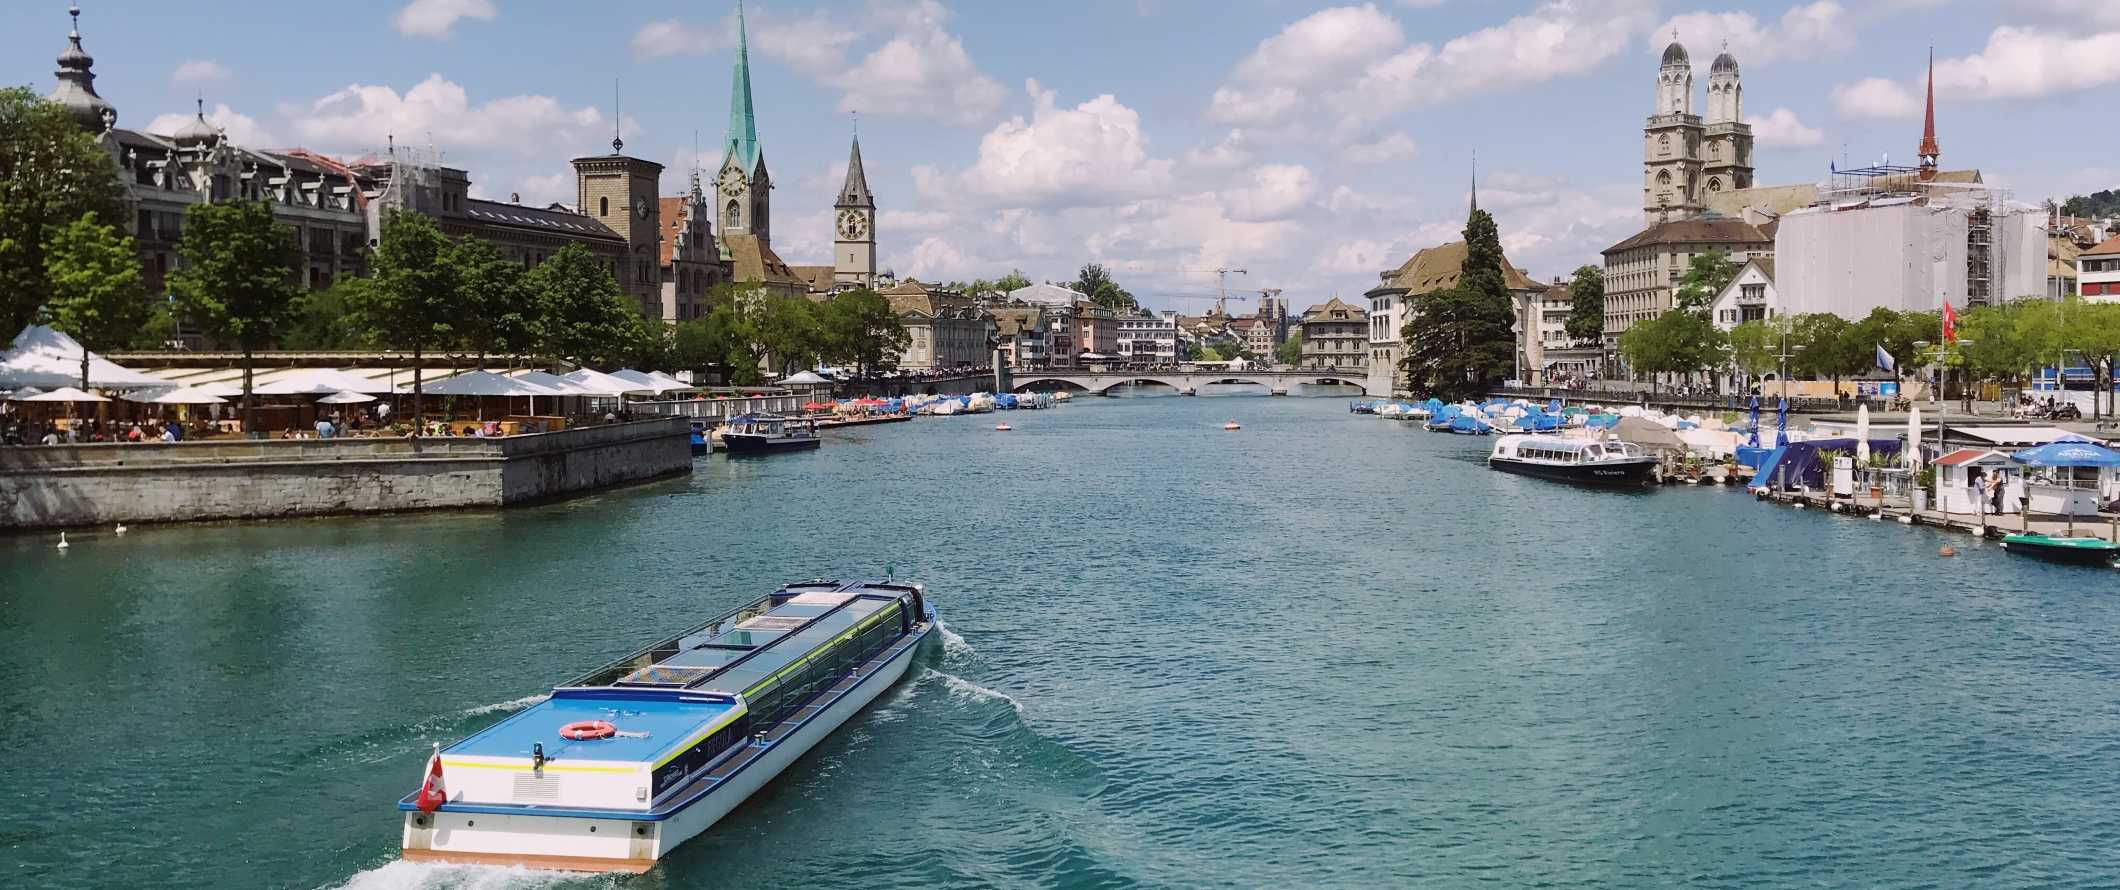 Boat going down the river in Zurich, Switzerland